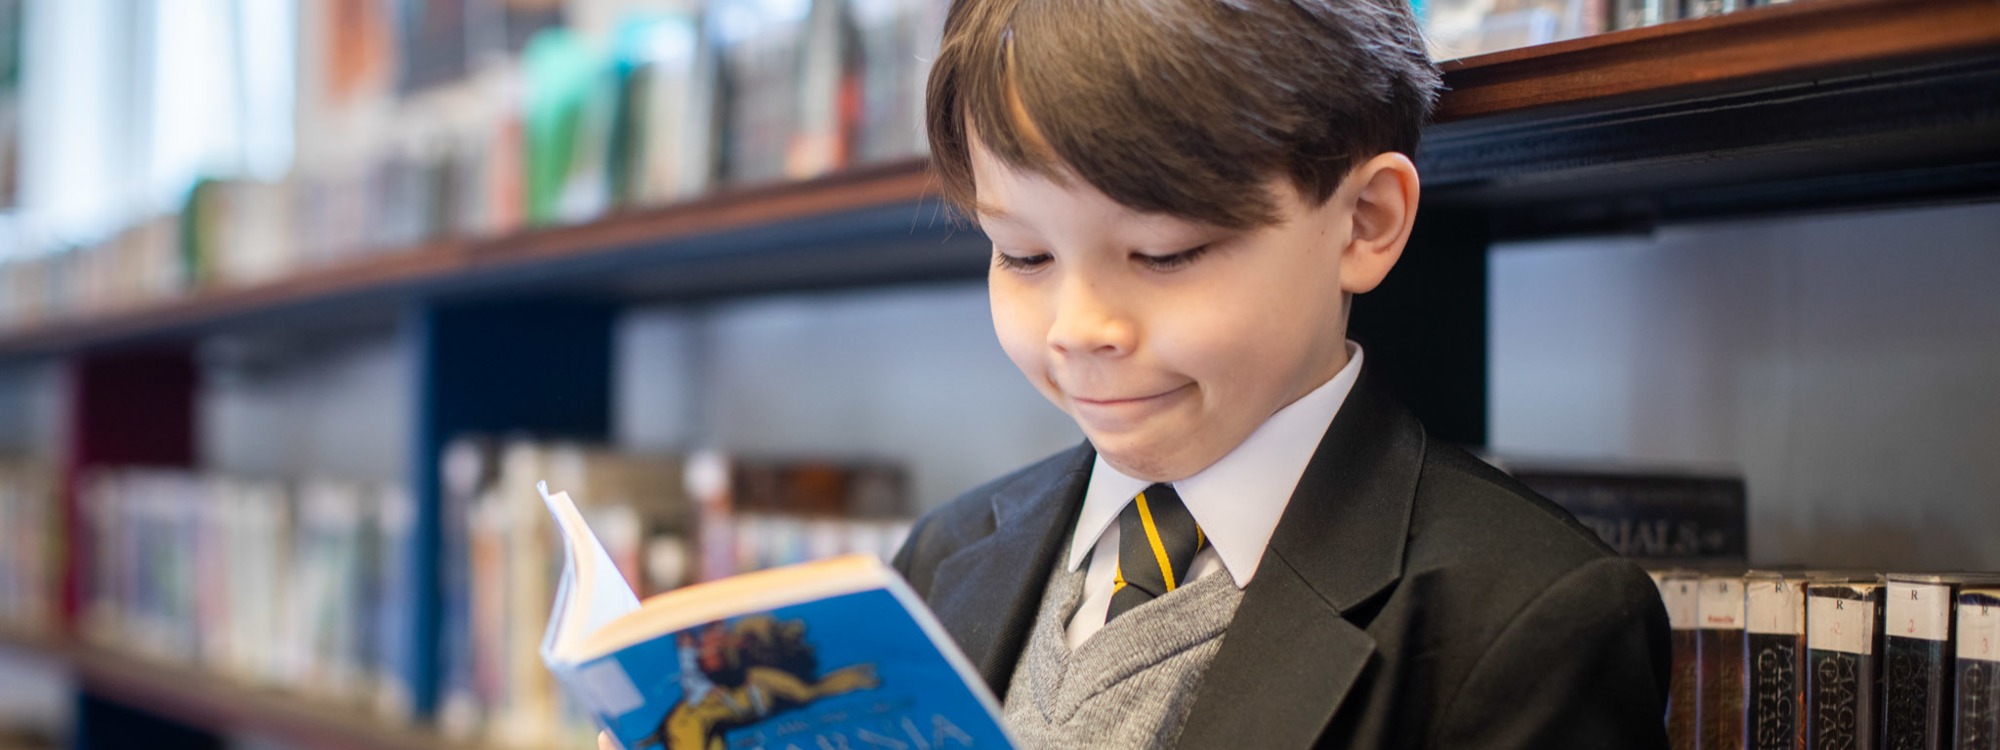 Year 7 pupil reading Narnia